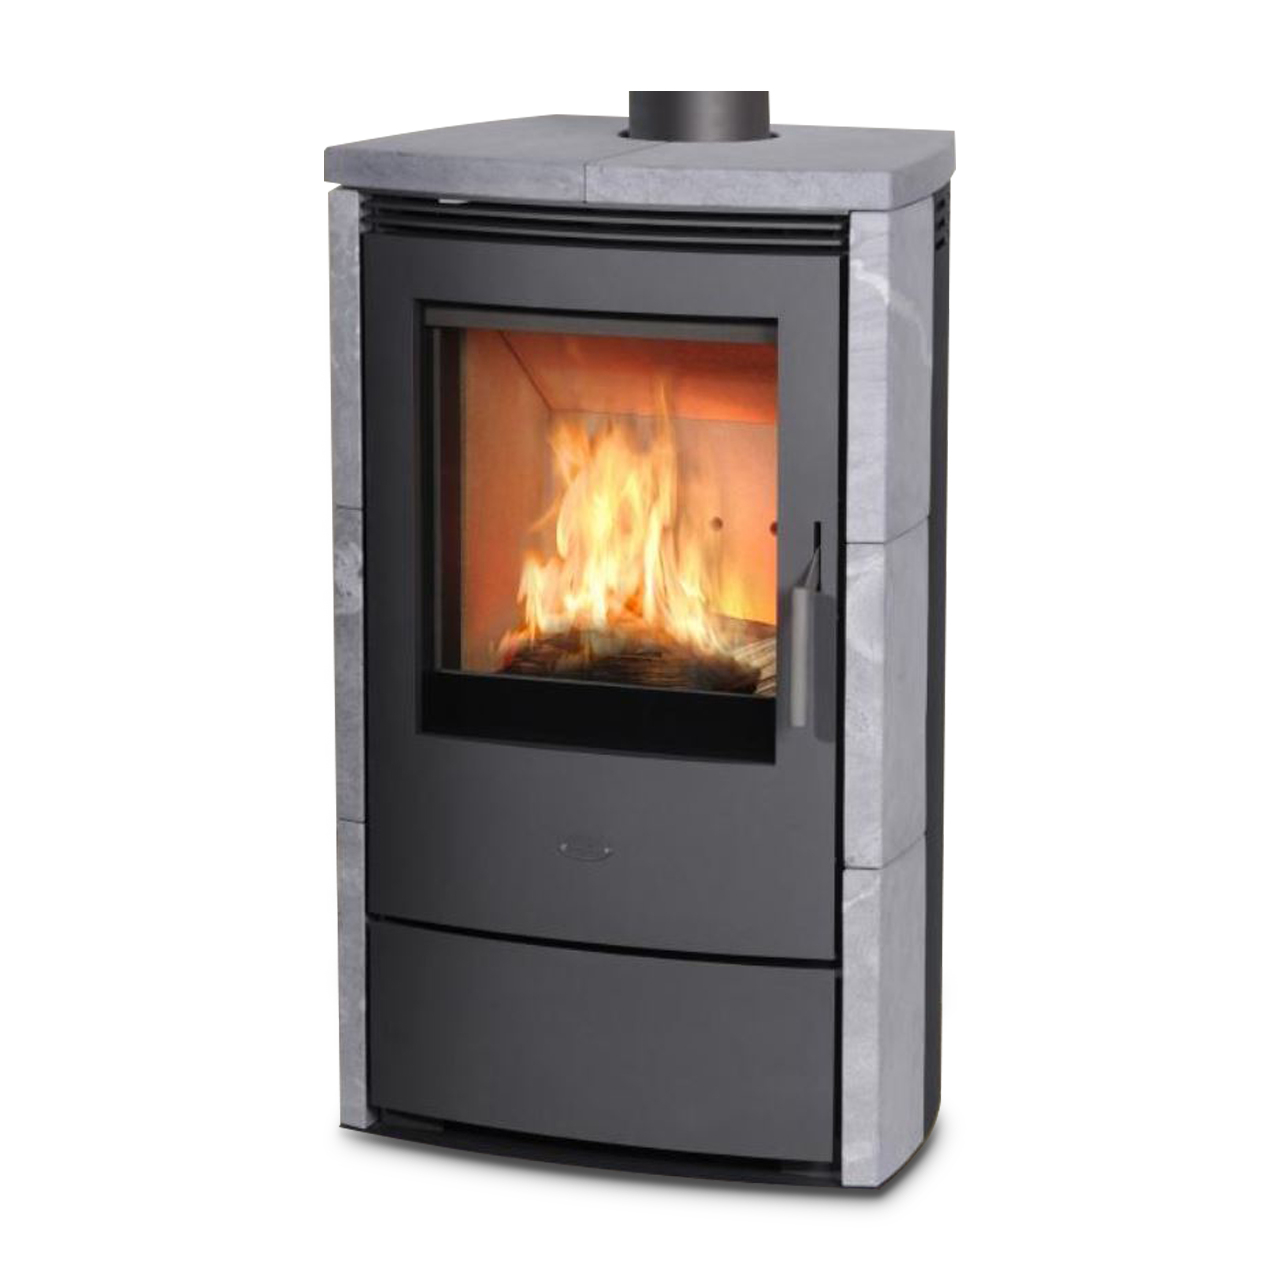 Gas Heater Fireplace Best Of Kaminofen Fireplace Meltemi Speckstein 8 Kw